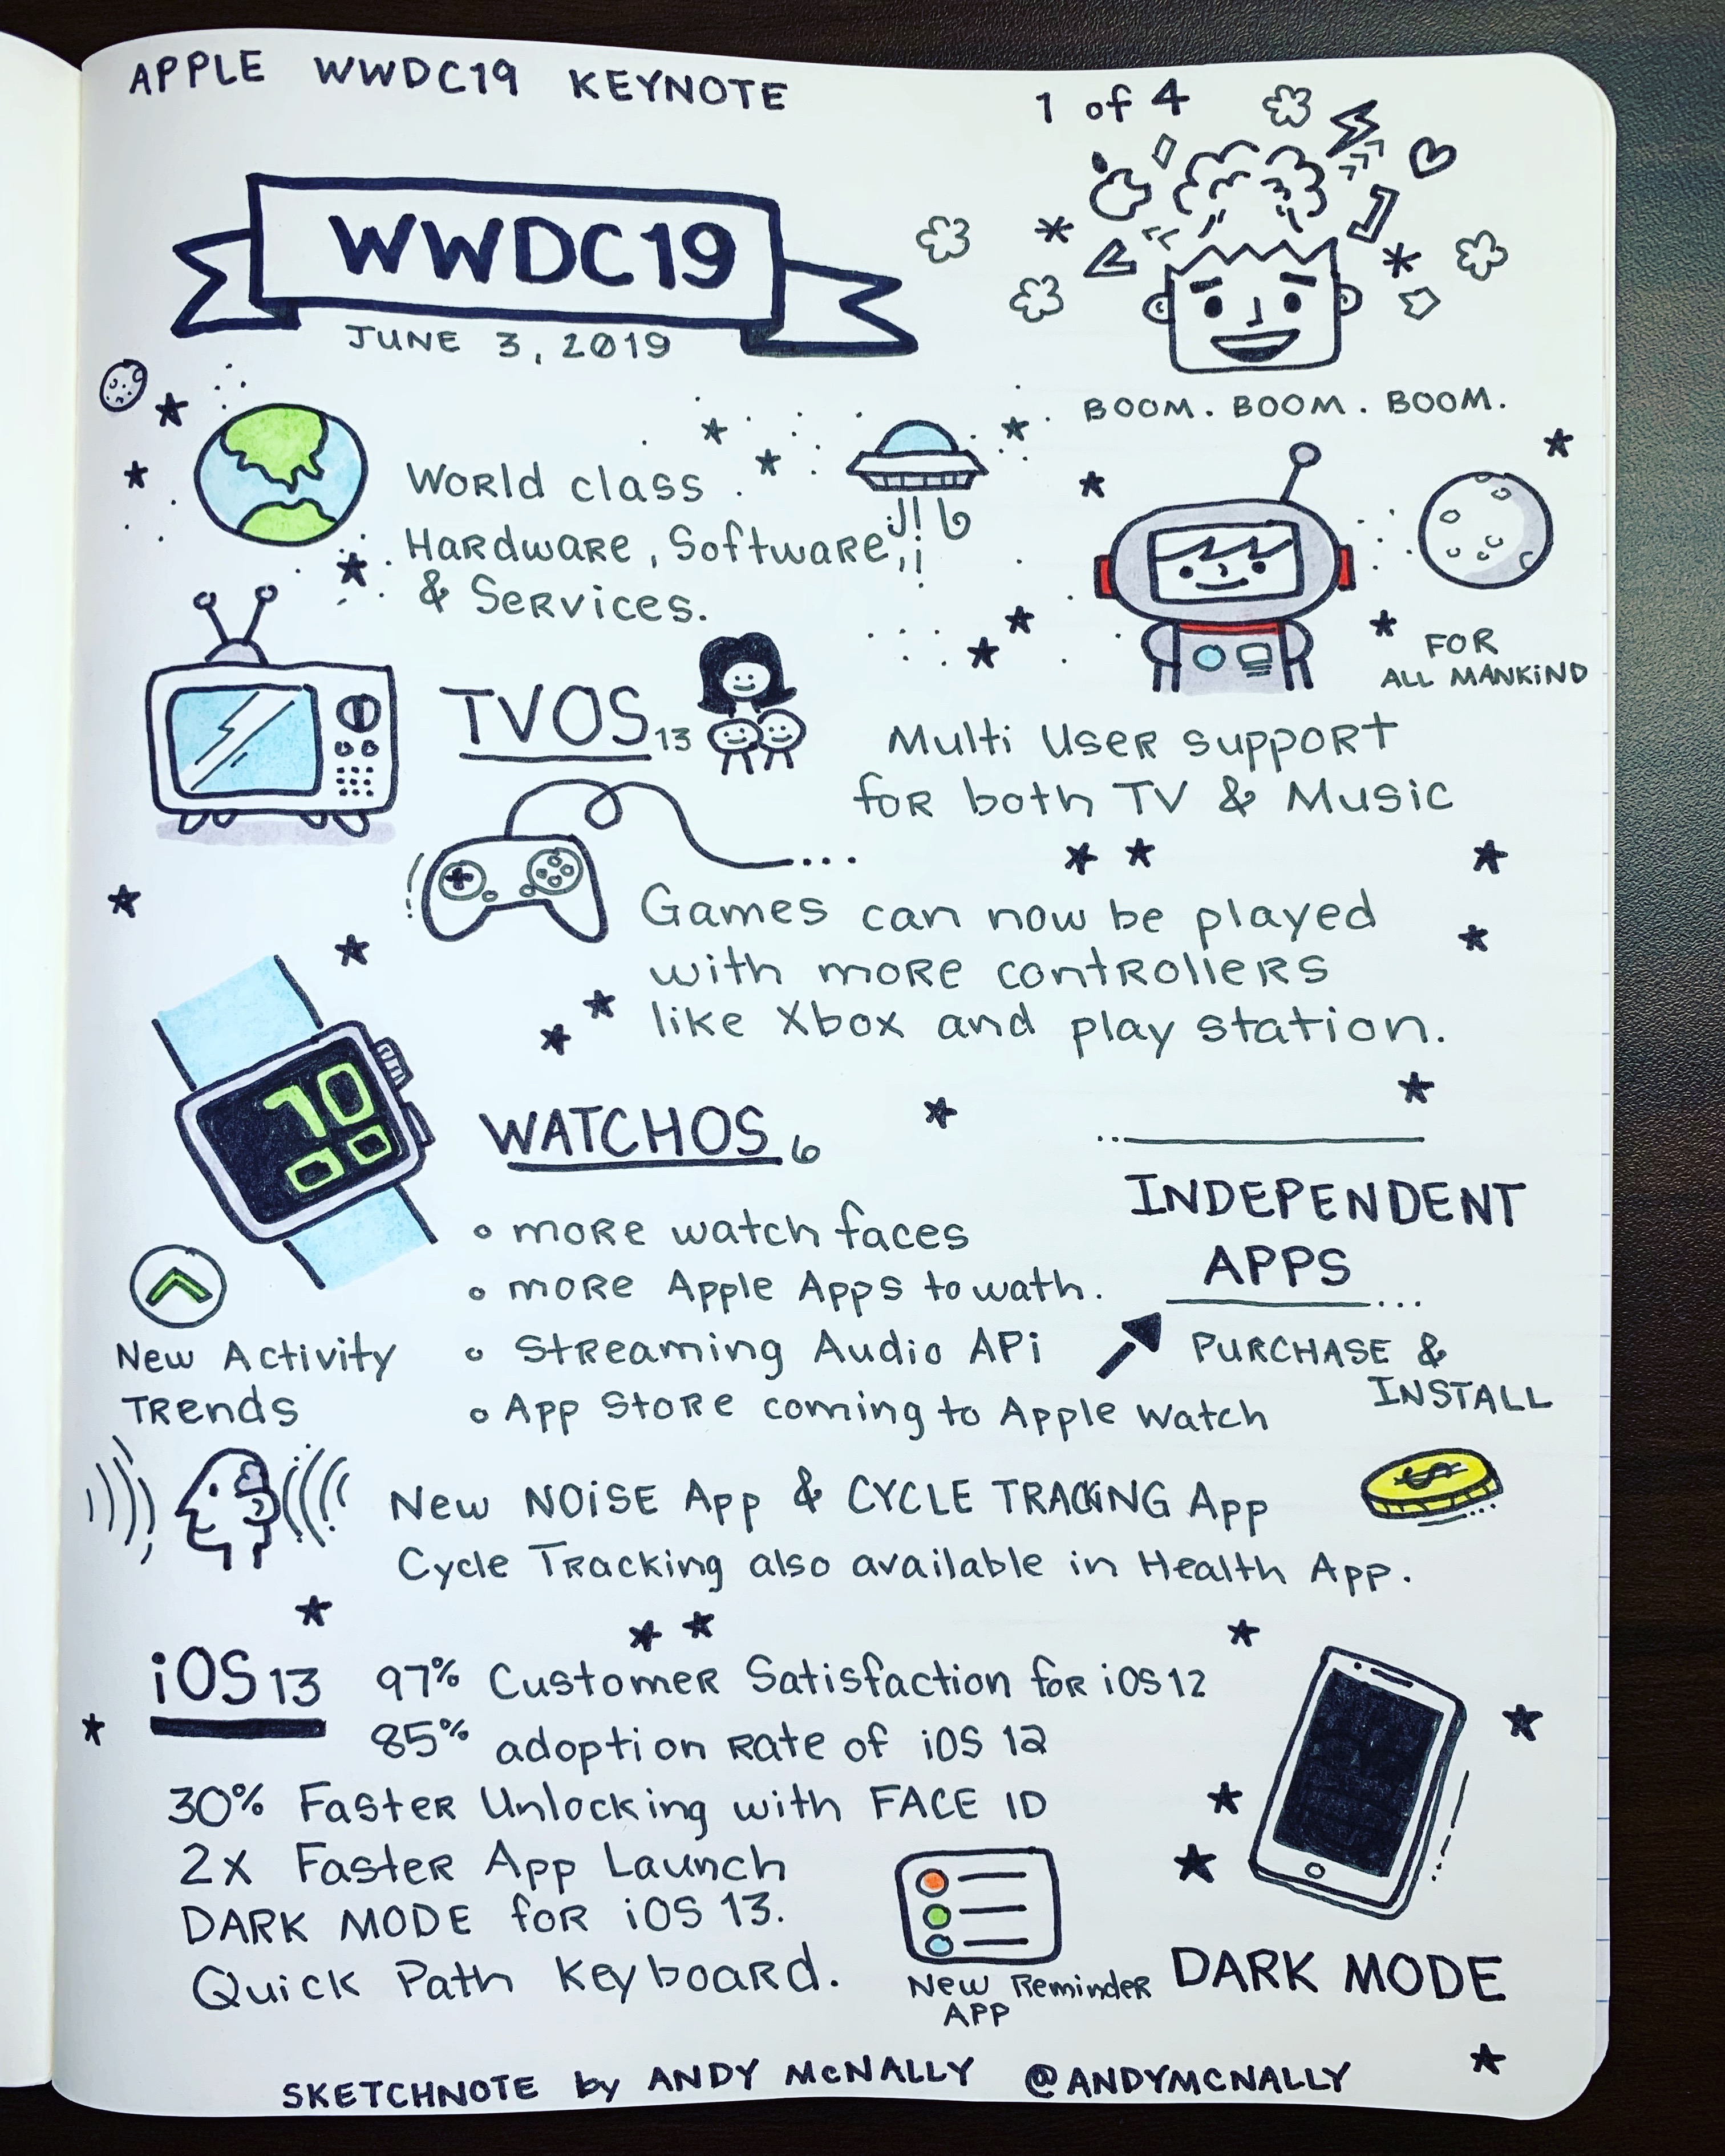 WWDC 2019 Keynote sketchnotes, part 1 of 4